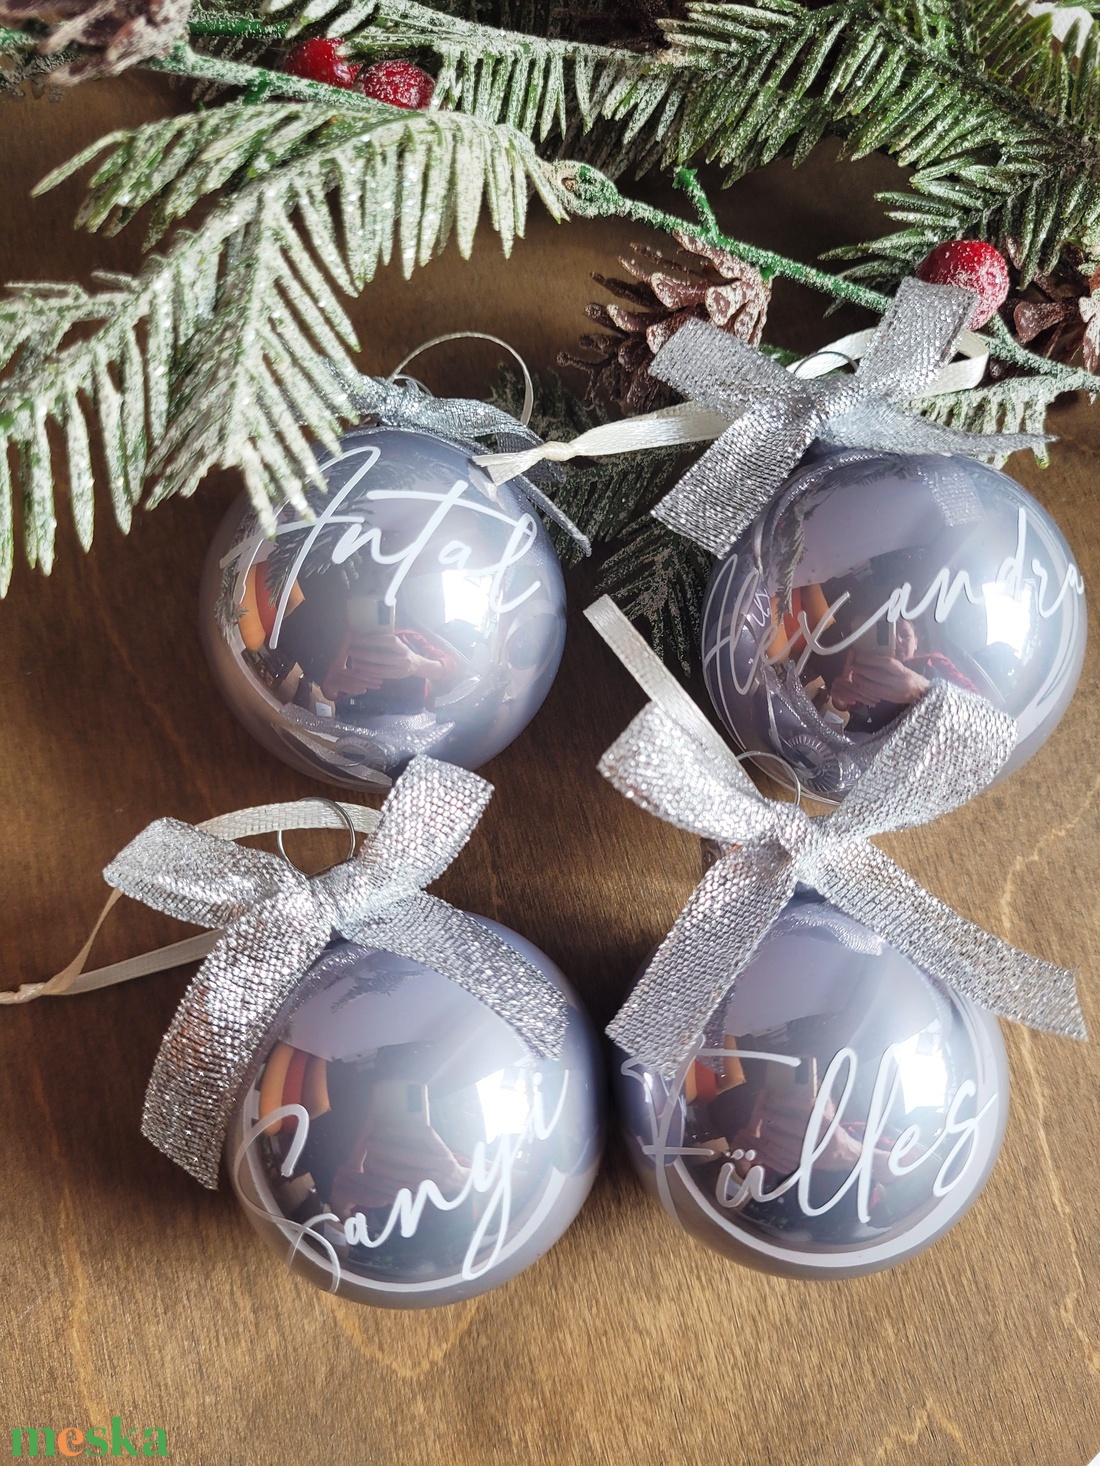 karácsonyi üveg gömb névvel feliratozva, 6cm, választható gömb, név és masni színnel - karácsony - karácsonyi lakásdekoráció - karácsonyfadíszek - Meska.hu